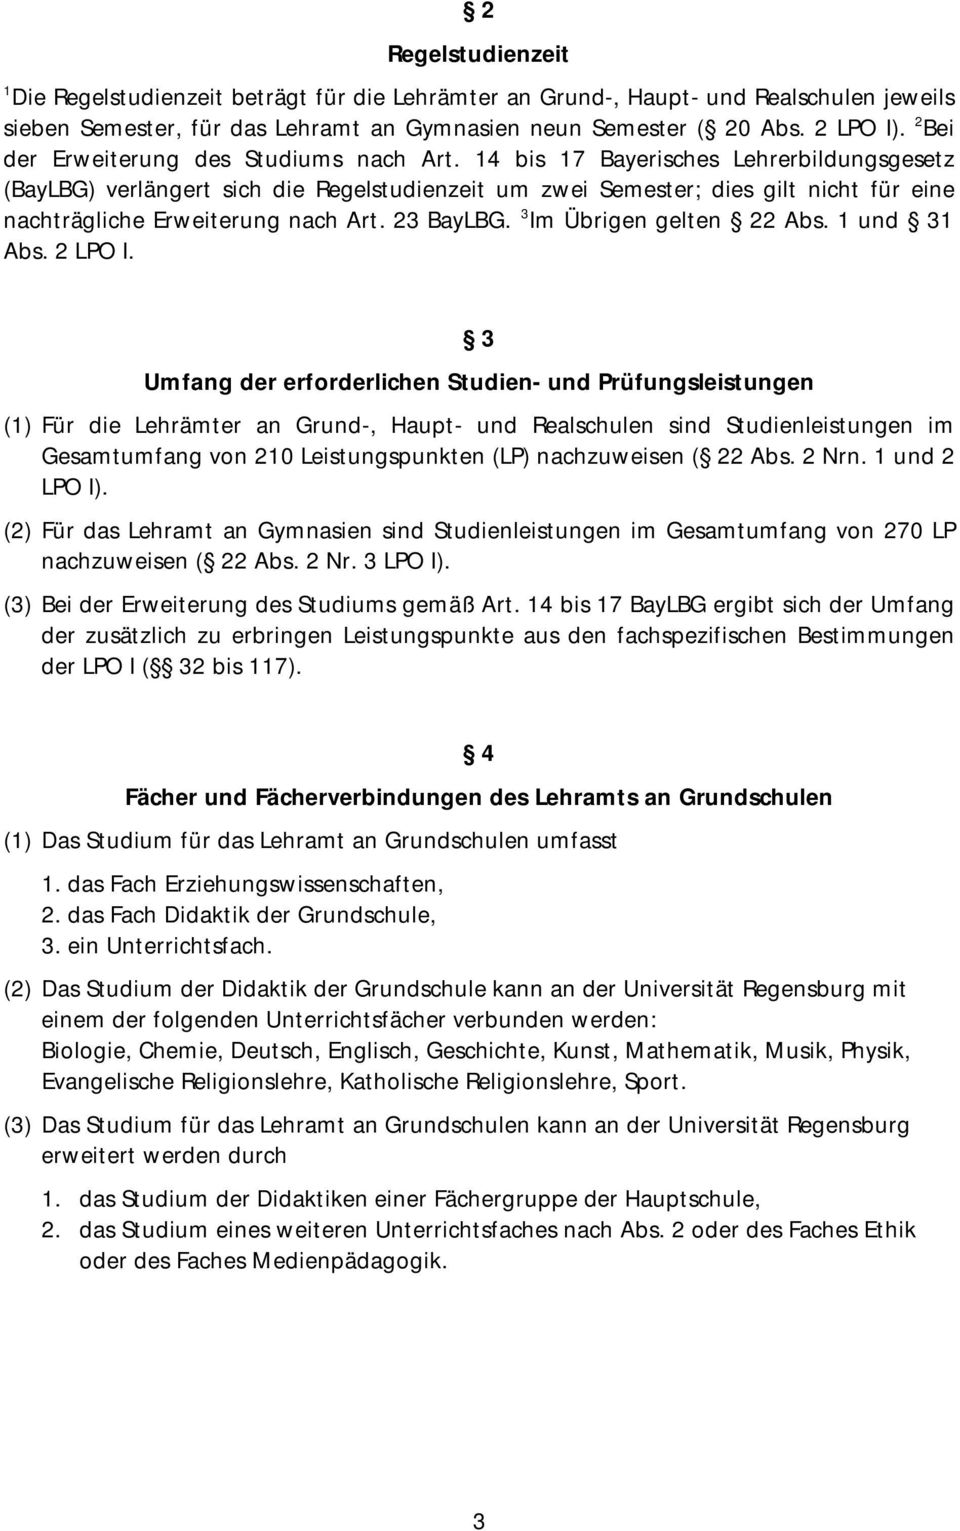 14 bis 17 Bayerisches Lehrerbildungsgesetz (BayLBG) verlängert sich die Regelstudienzeit um zwei Semester; dies gilt nicht für eine nachträgliche Erweiterung nach Art. 23 BayLBG.